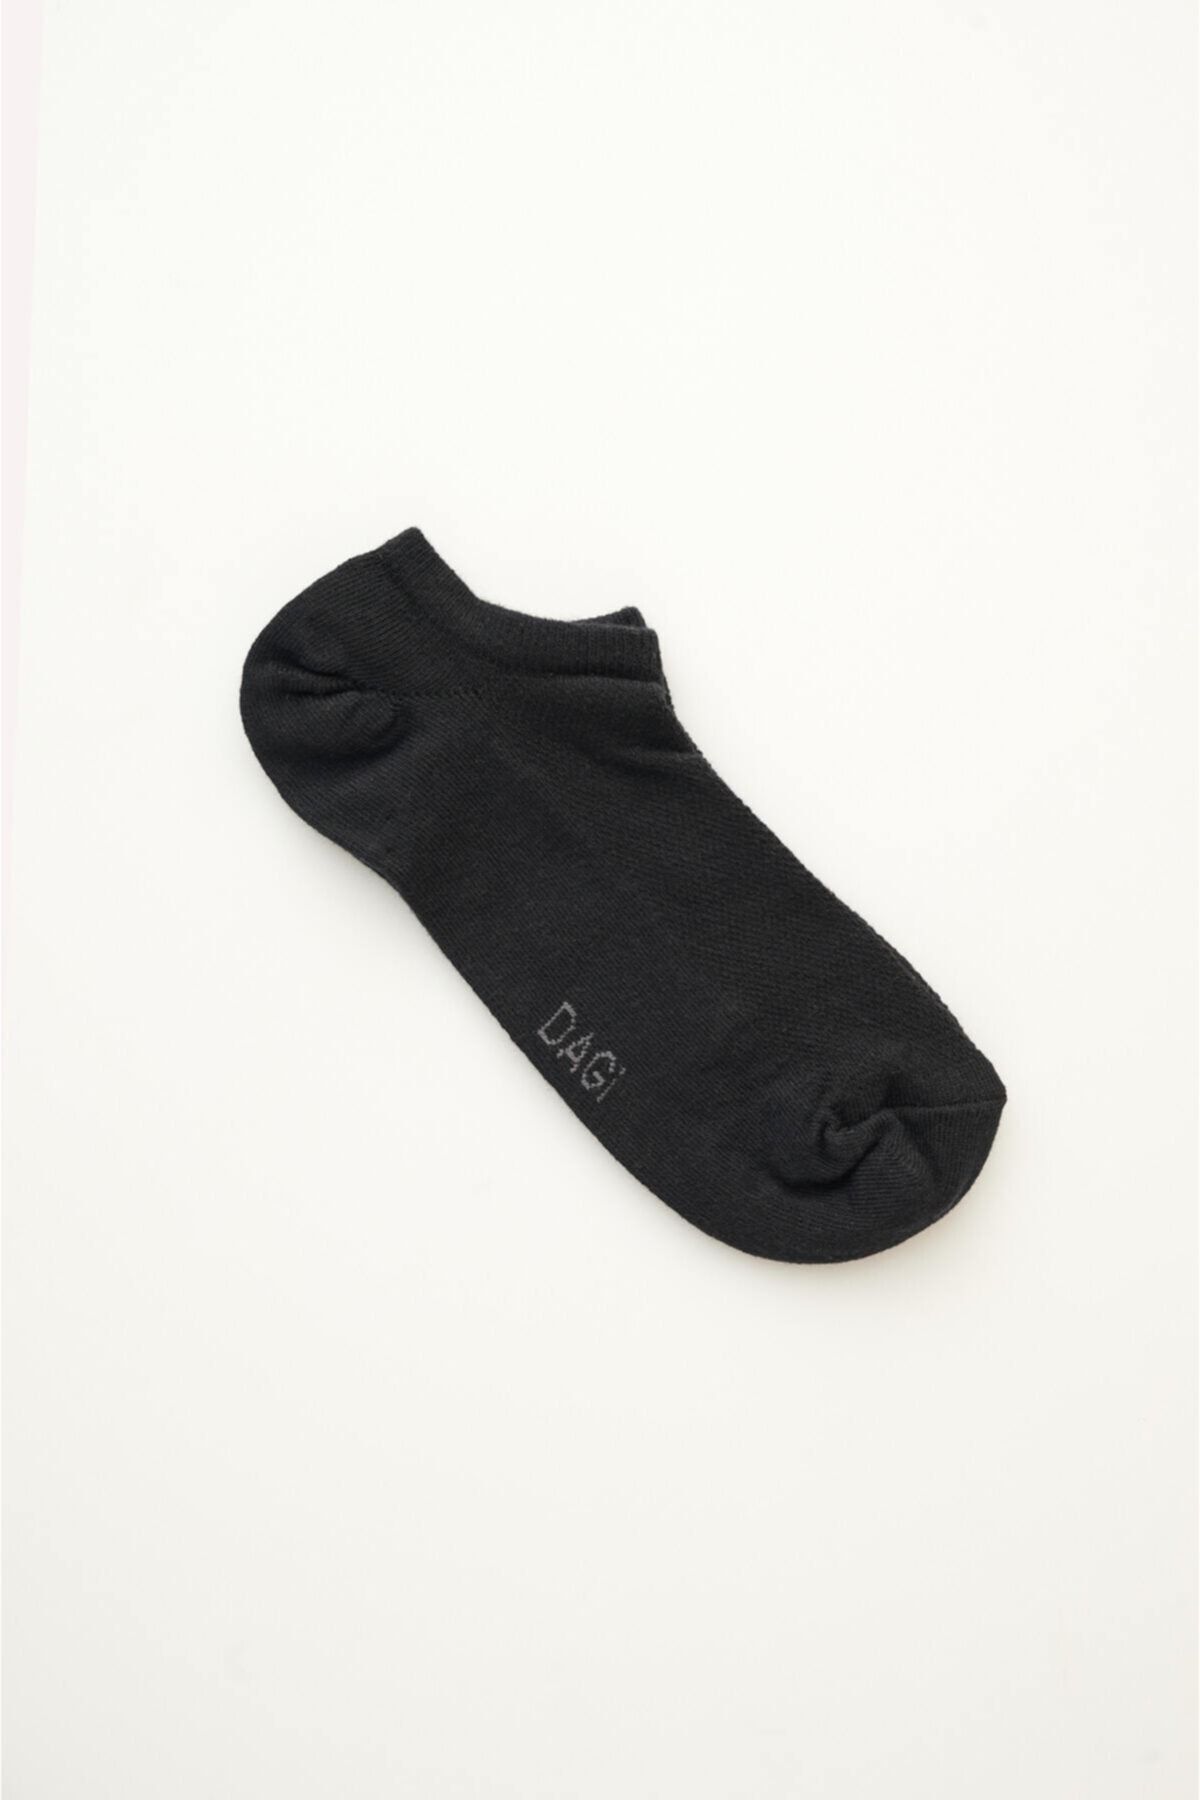 Dagi Siyah Erkek Pamuklu Kısa Soket Çorap